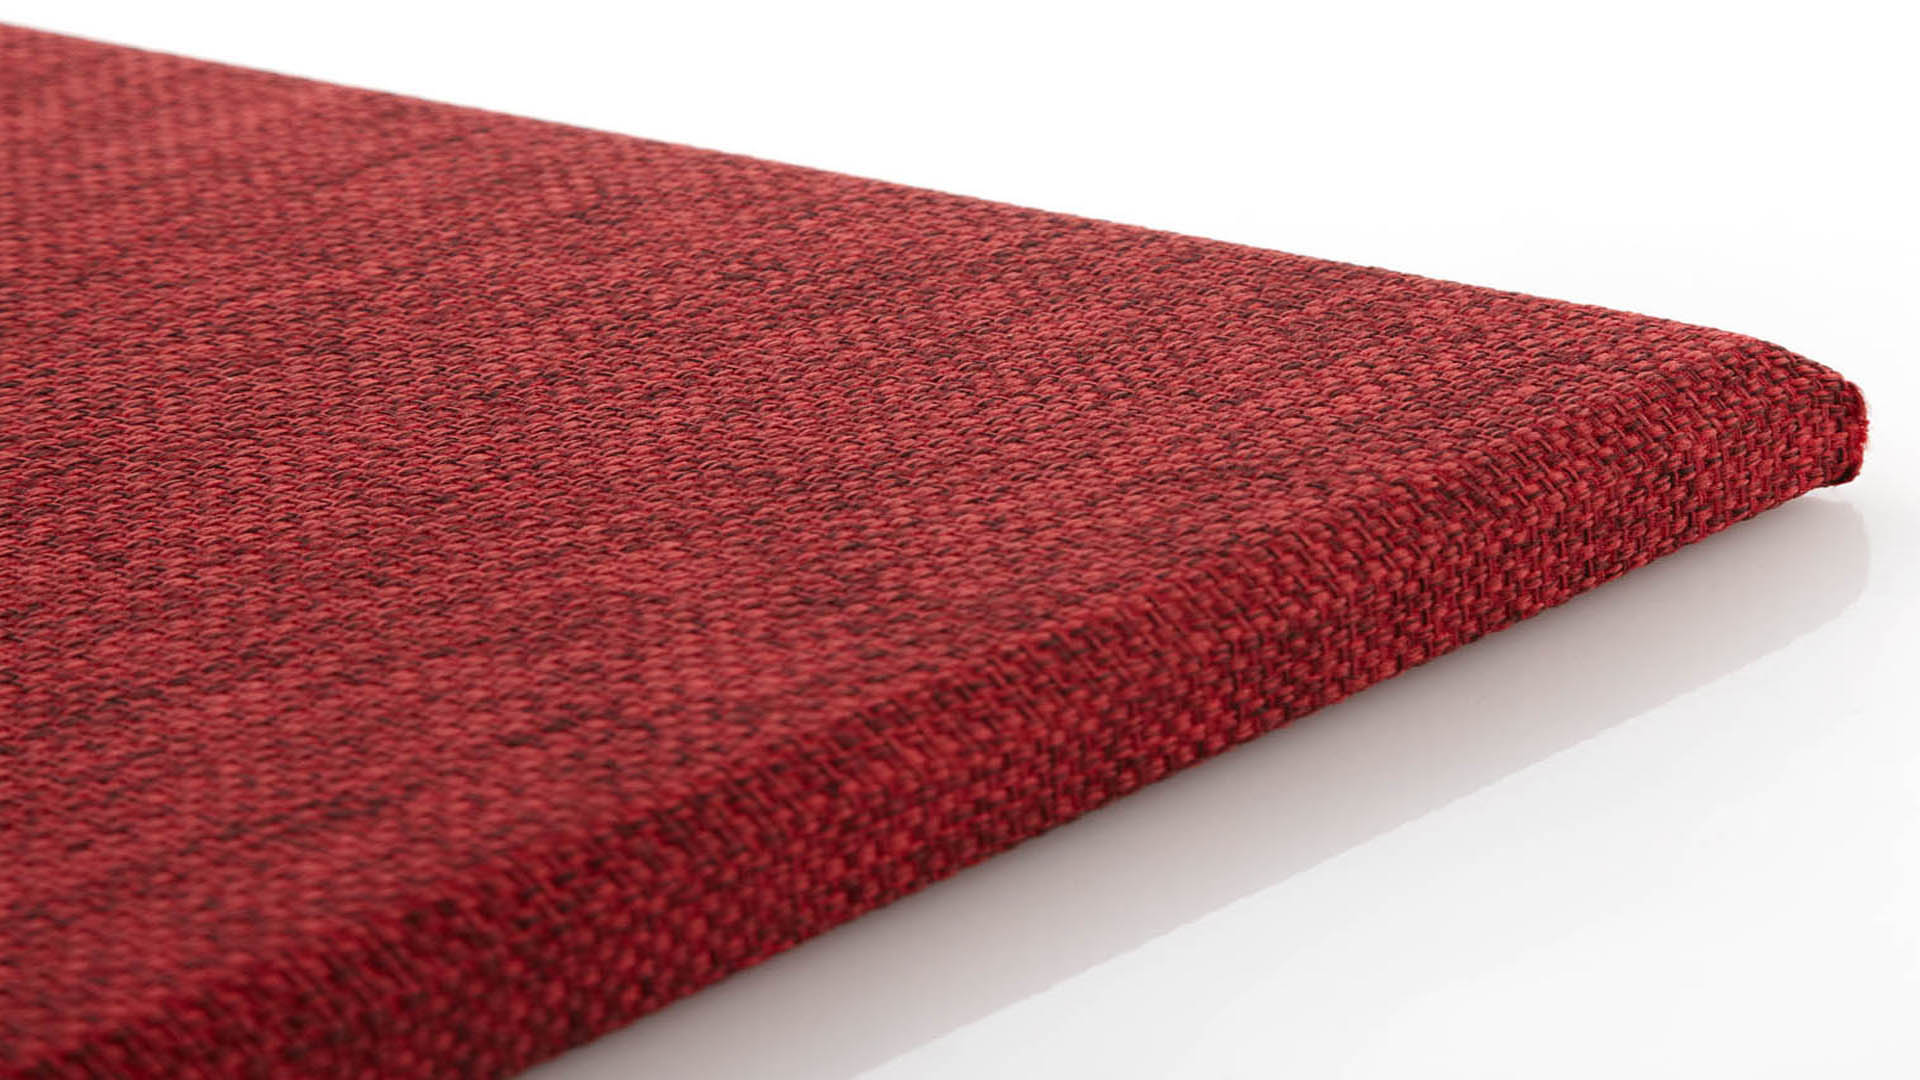 วัสดุอะคูสติก เอสซีจี รุ่น Cylence Zandera แผ่นมาตรฐาน สีแดง 0.60 x 1.20 m.